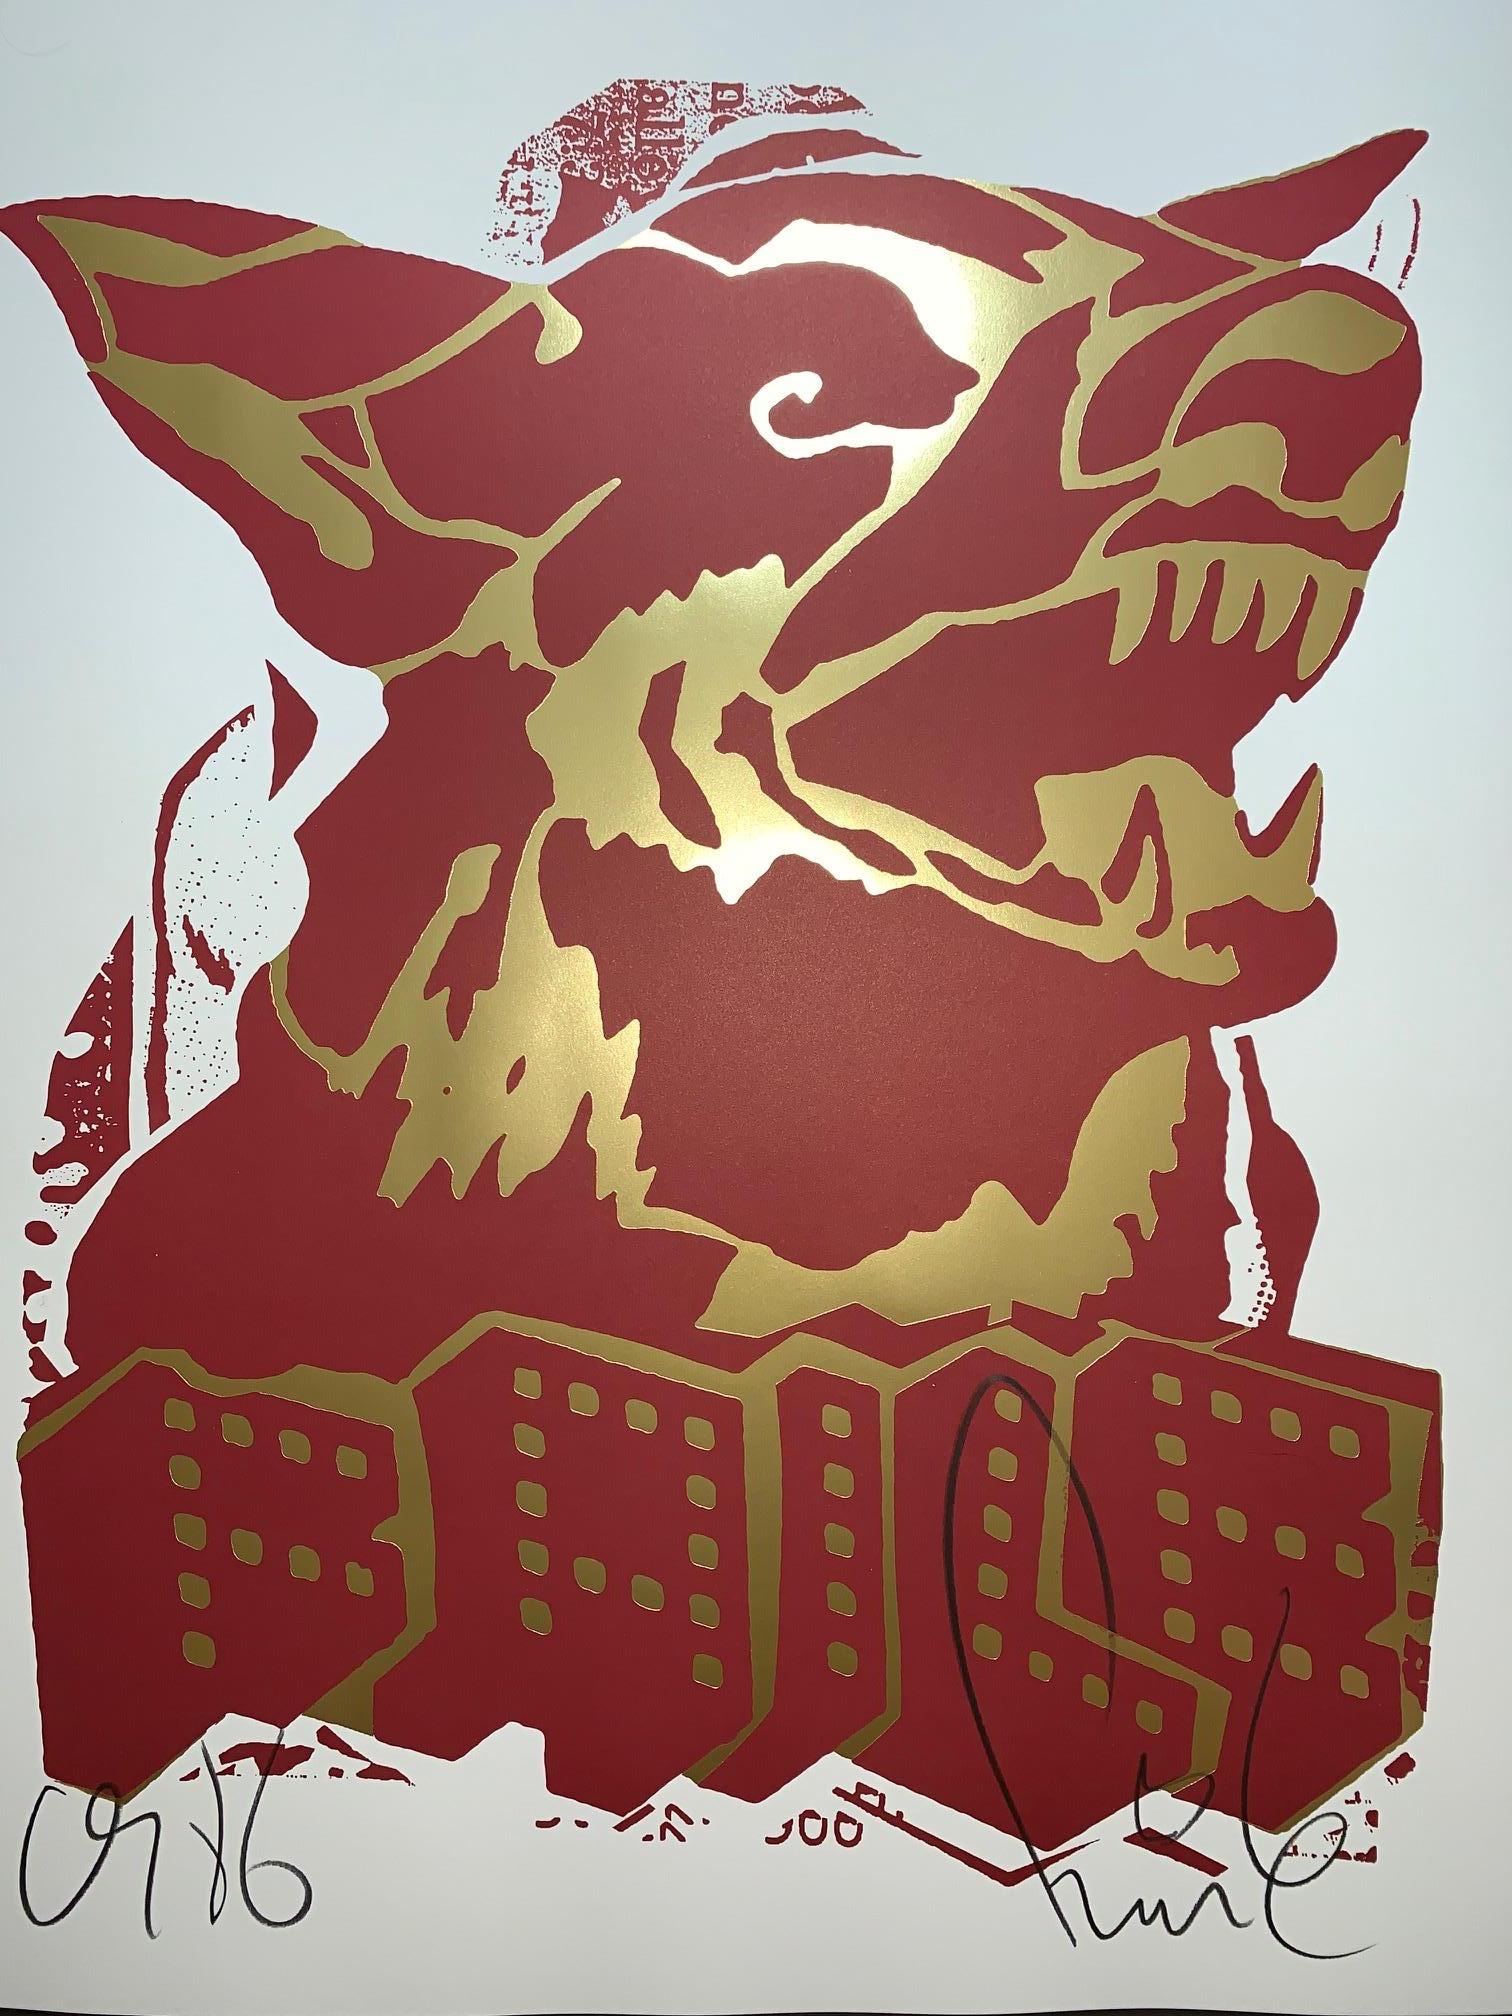 Animal Print Faile - FAILE DOG 2018 Édition rouge et or en encres métalliques dorées Pop Art Street Art Urban 